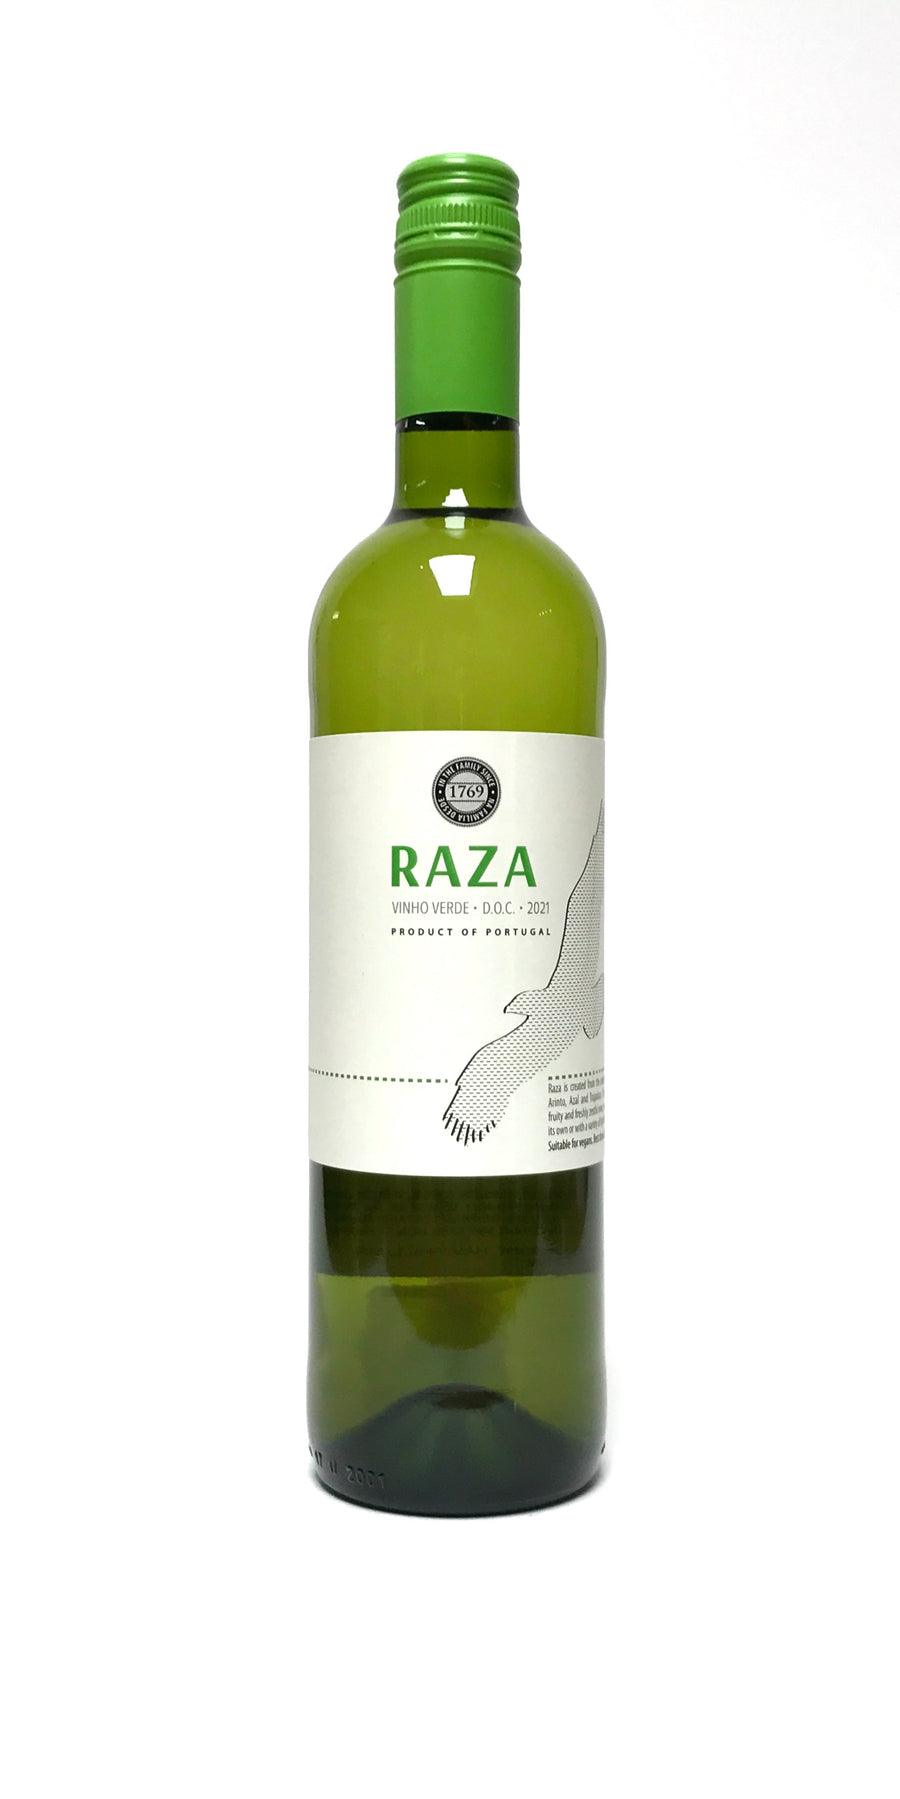 Raza 2021 Vinho Verde Branco